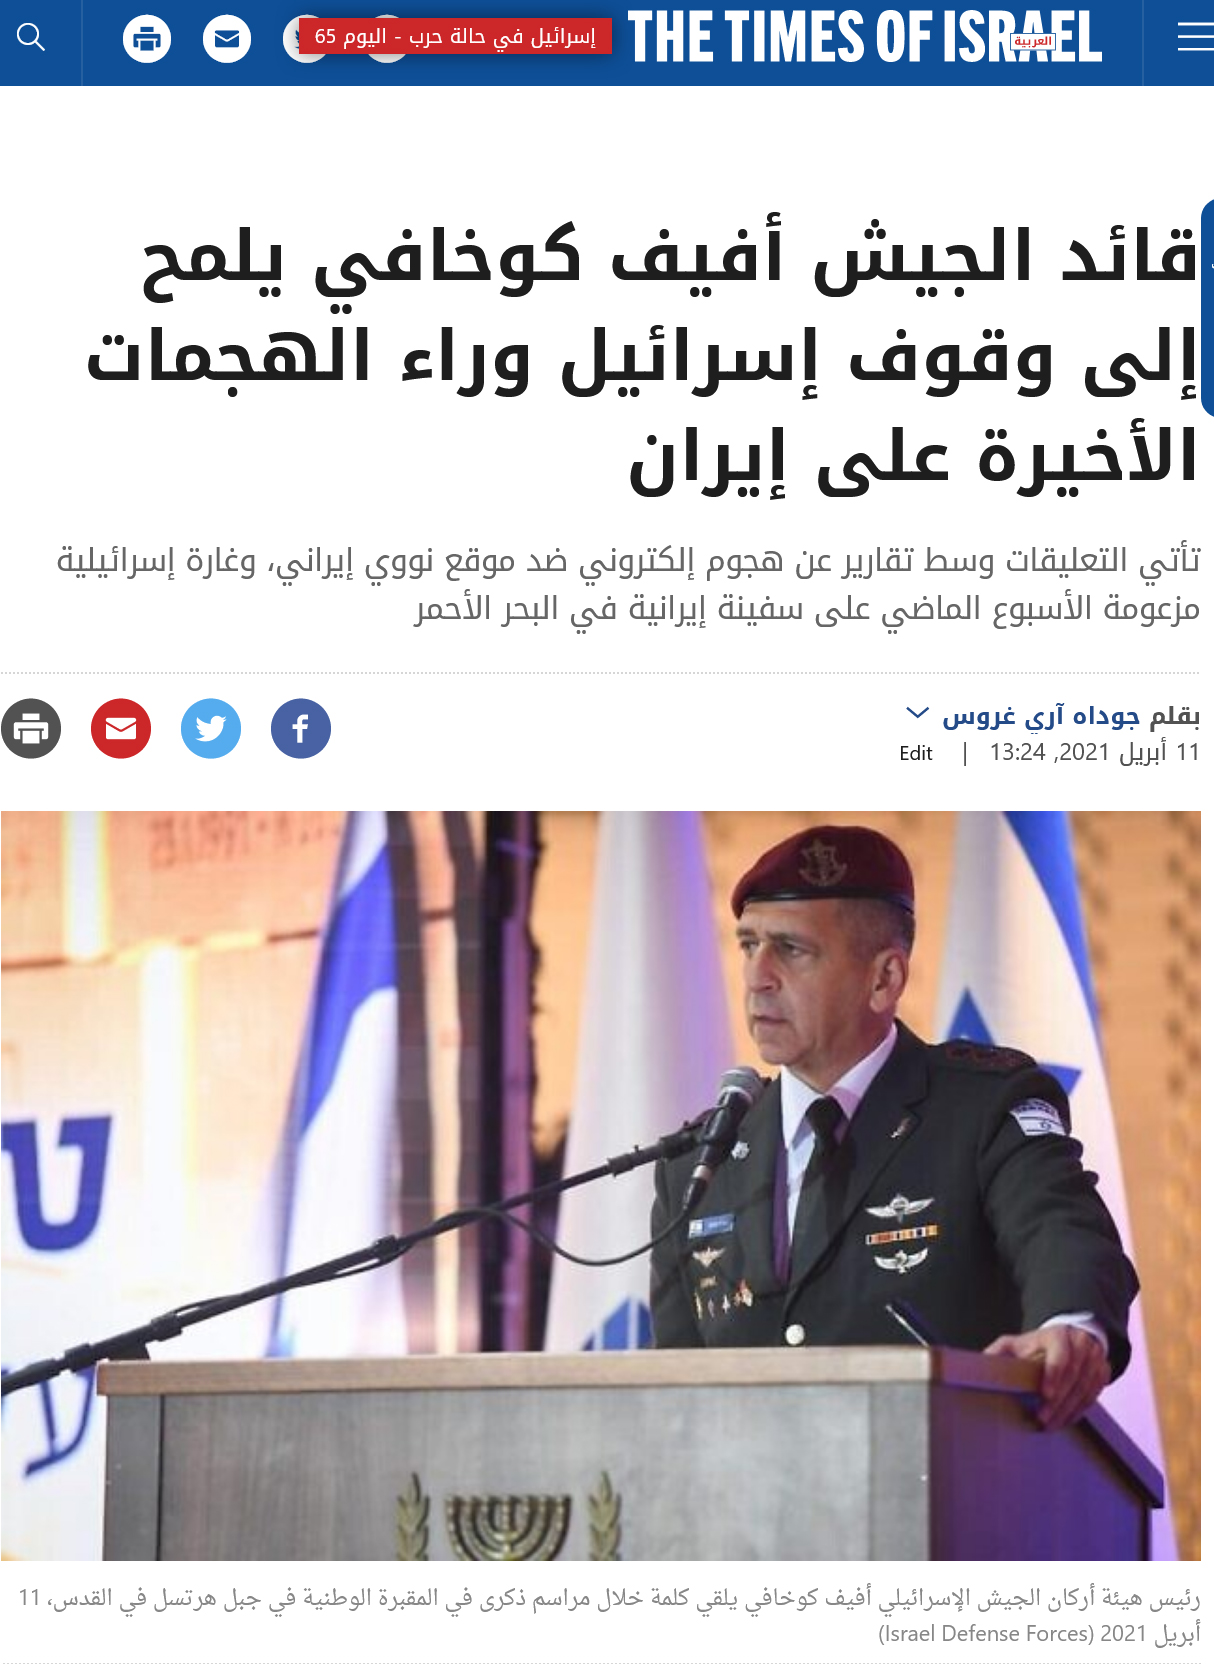 مقال بعنوان (قائد الجيش أفيف كوخافي يلمح إلى وقوف إسرائيل وراء الهجمات الأخيرة على إيران) في صحيفة (timesofisrael) الناطقة بالعربية